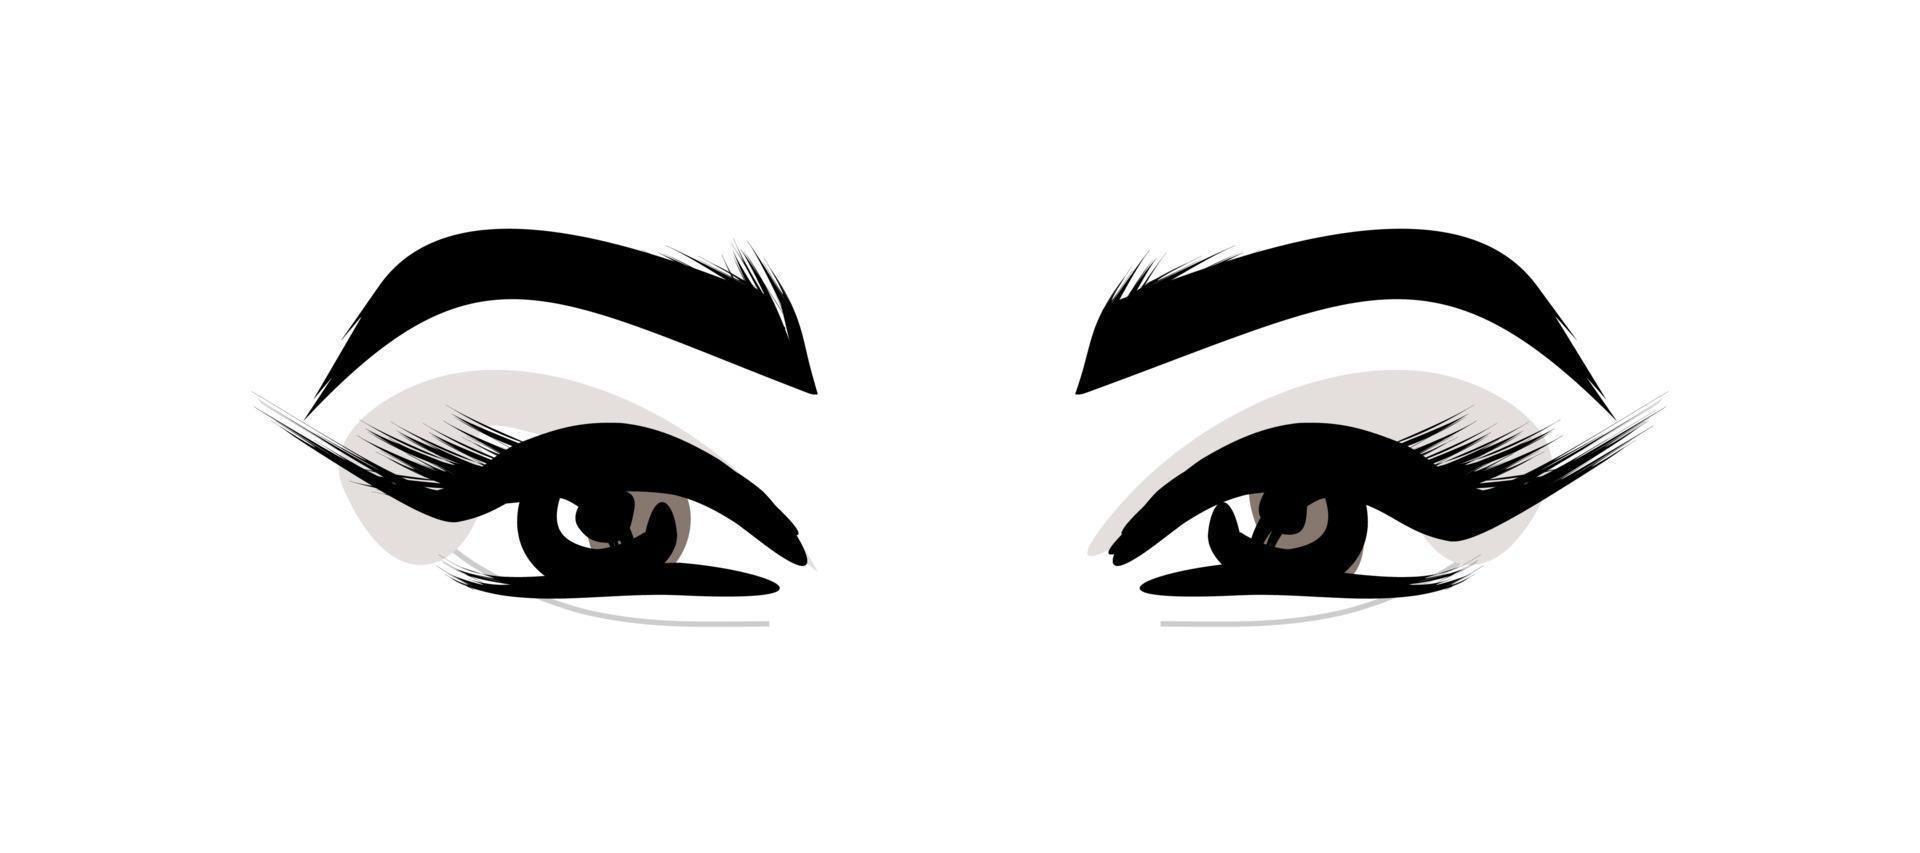 vrouwelijke ogen kijken. wimpers en wenkbrauwen. make-up - vectorillustratie geïsoleerd op een witte achtergrond. damescosmetica vector